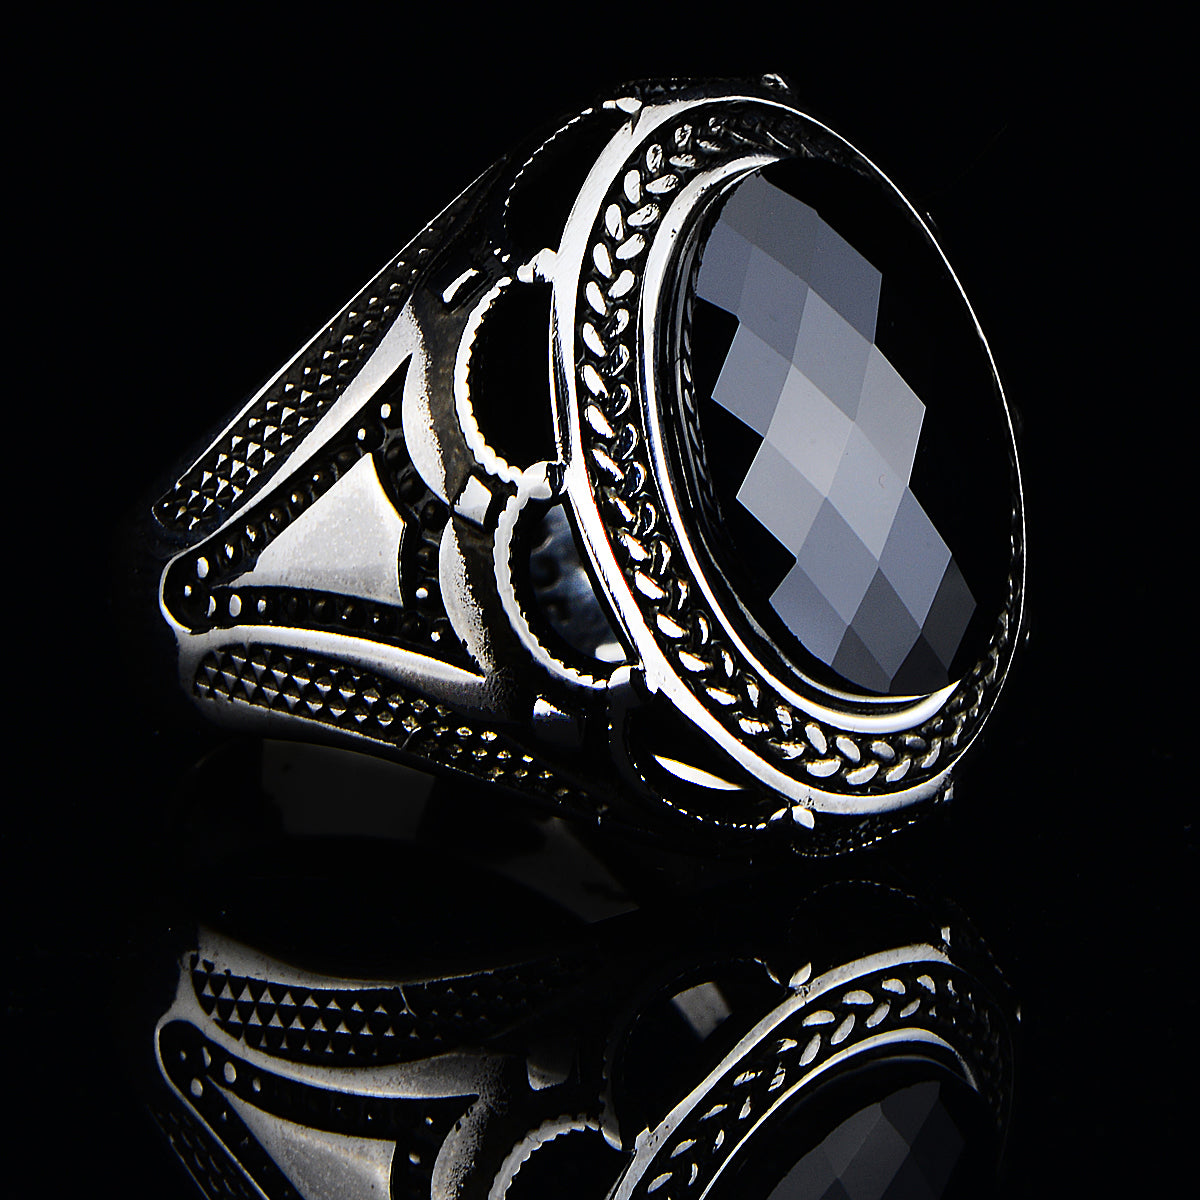 Silberner Ring im osmanischen Stil mit schwarzem Zirkonstein